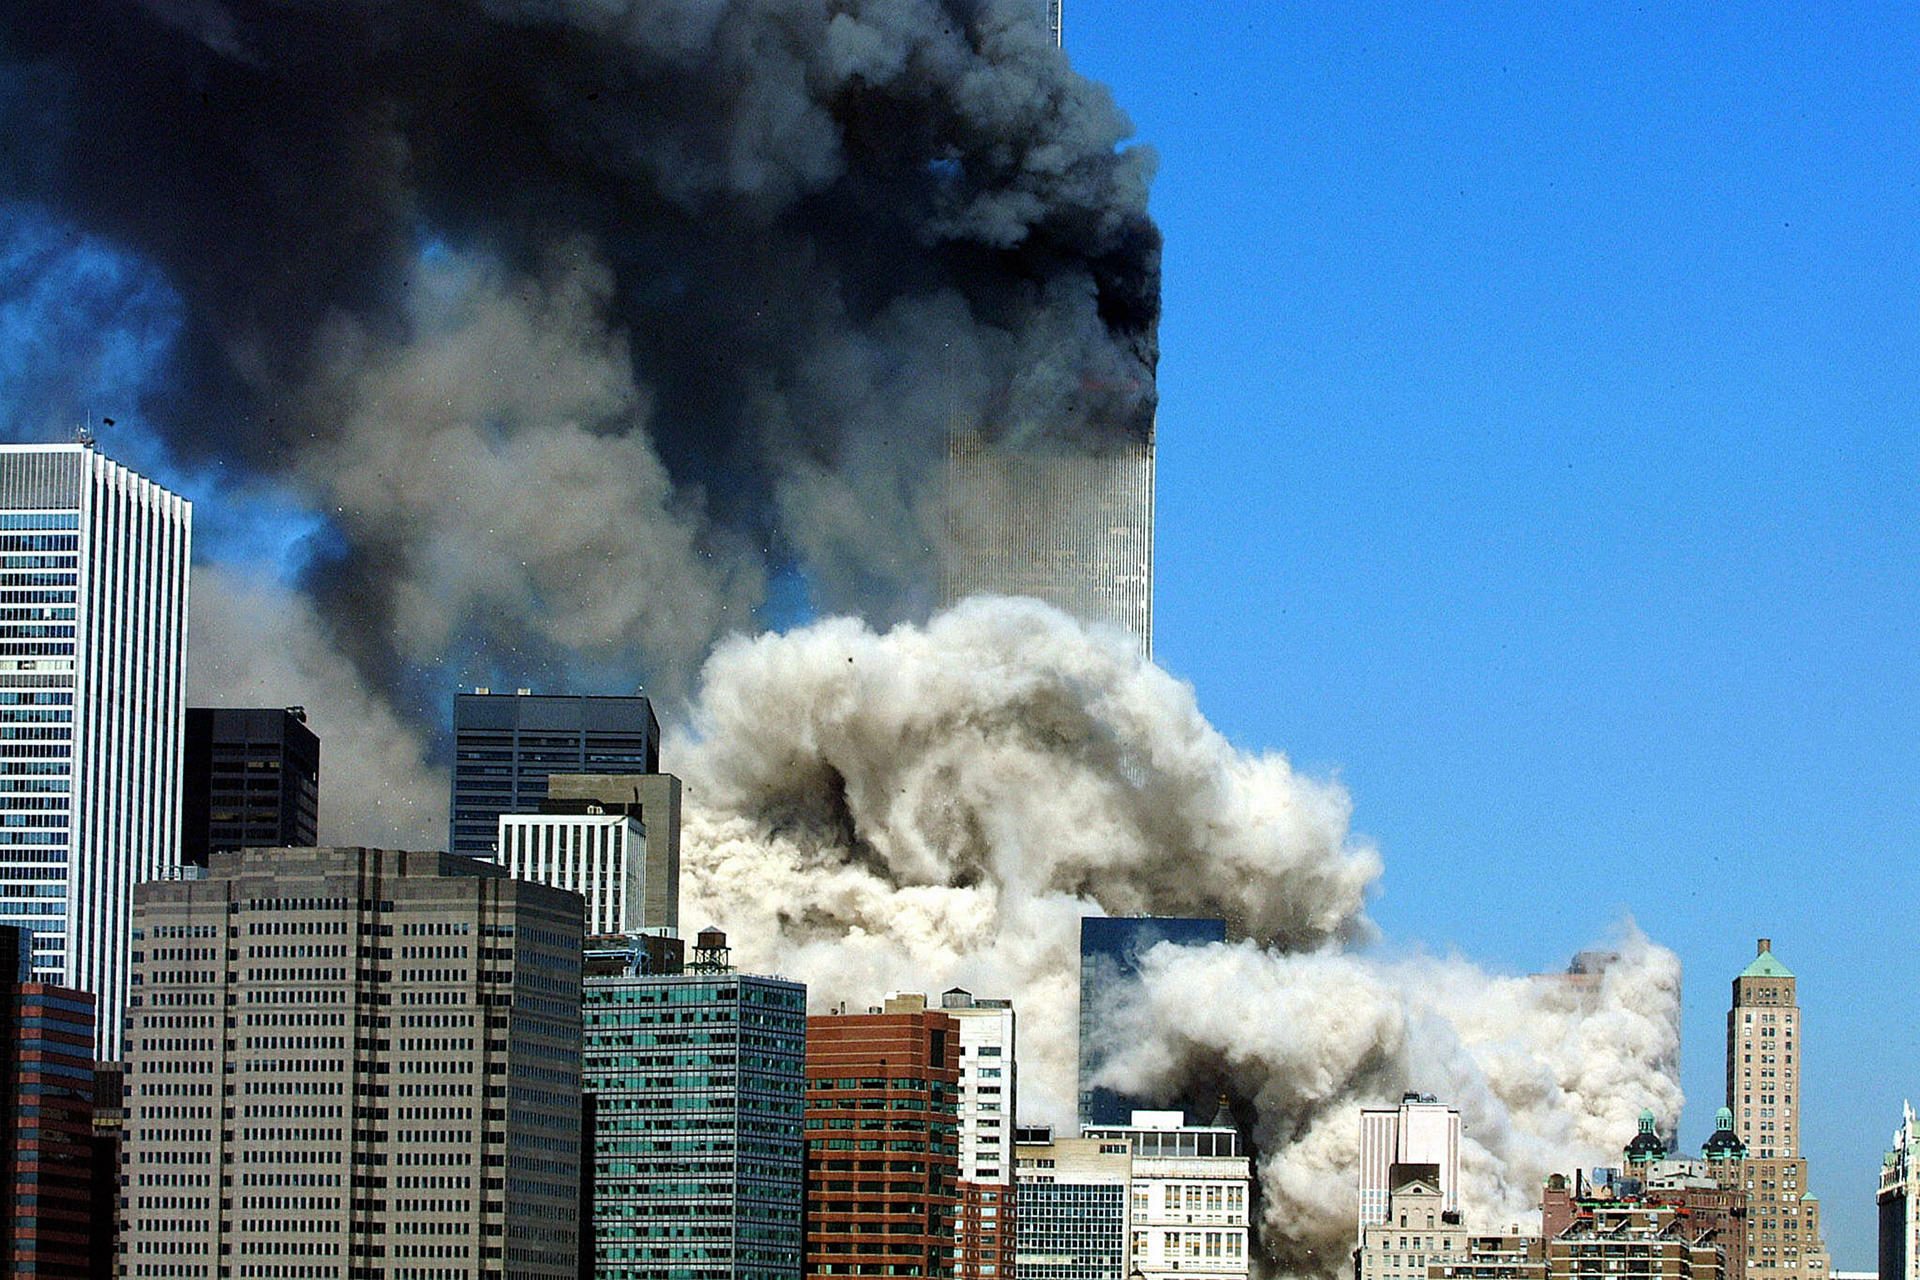 صور لم يسبق رؤيتها التغير الكبير الذي طرأ على برج التجارة العالمي قبل هجمات 11 سبتمبر وحتى اليوم عربي بوست